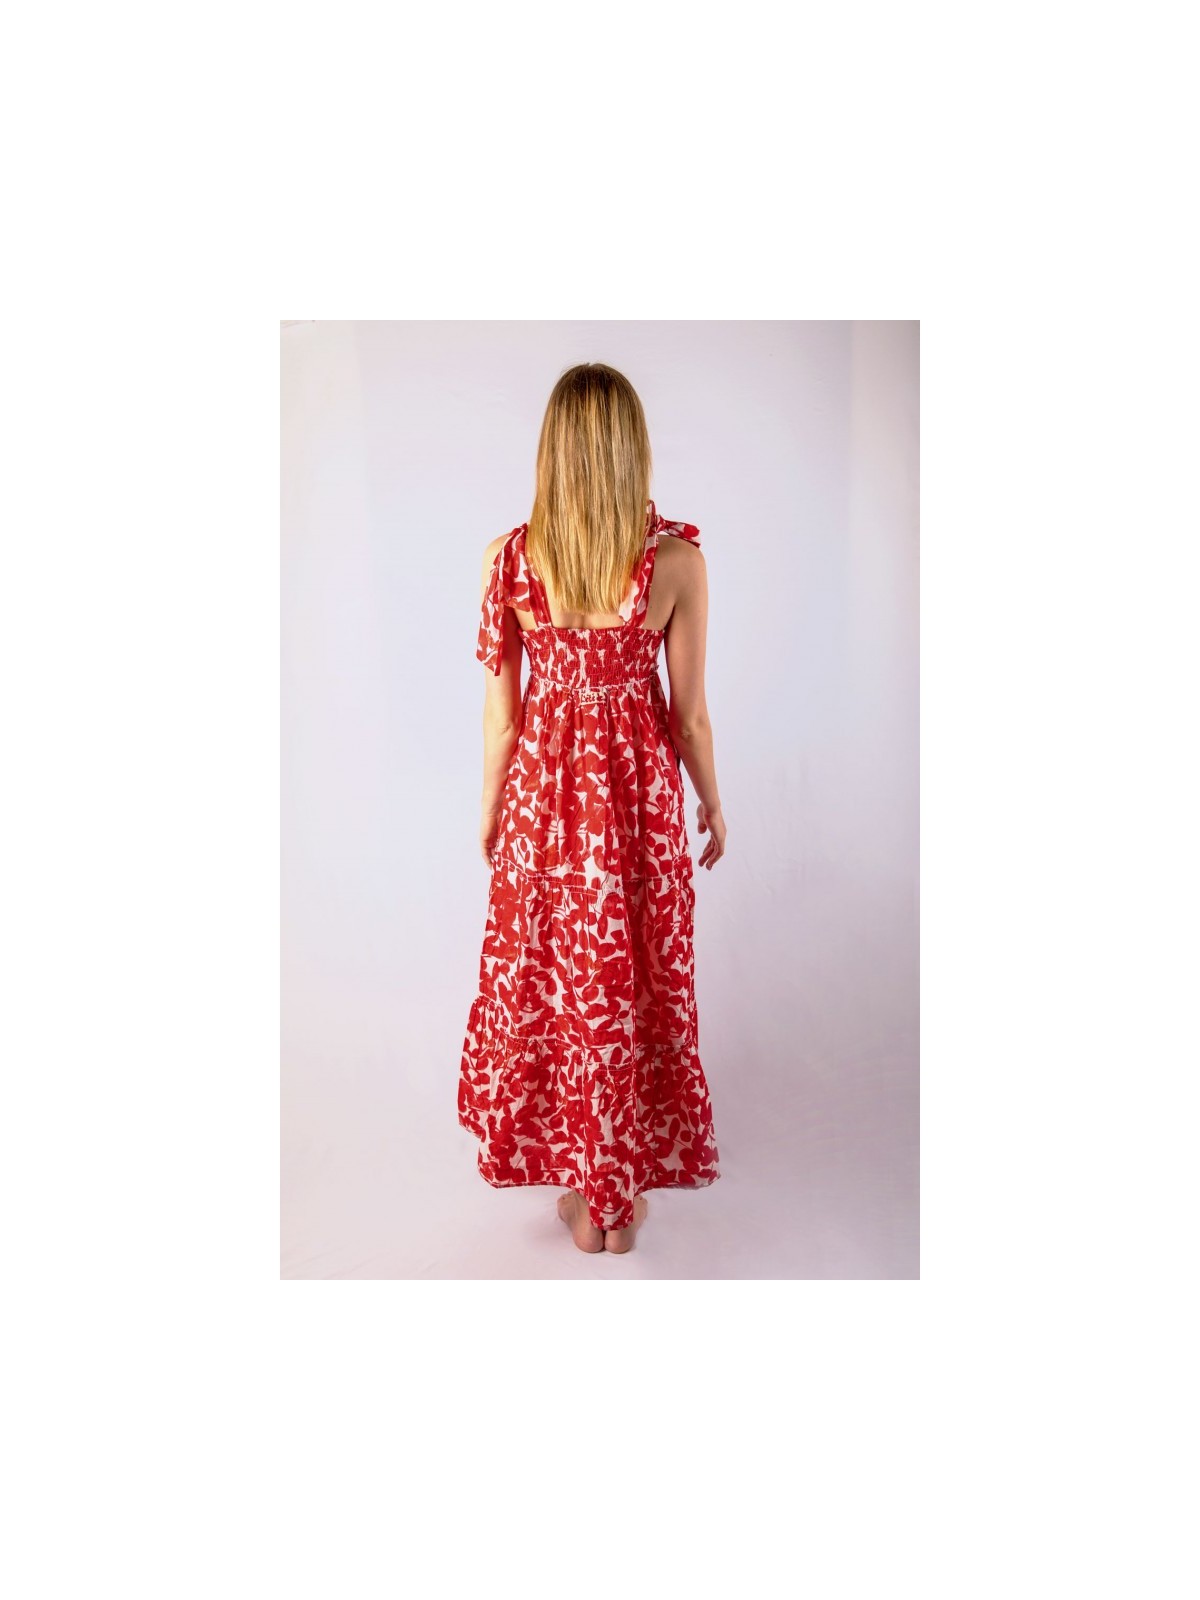 Robe longue bicolore rouge et blanche à motifs fleurs l 2 vue de dos l Tilleulmenthe mode boutique de vêtements femme en ligne